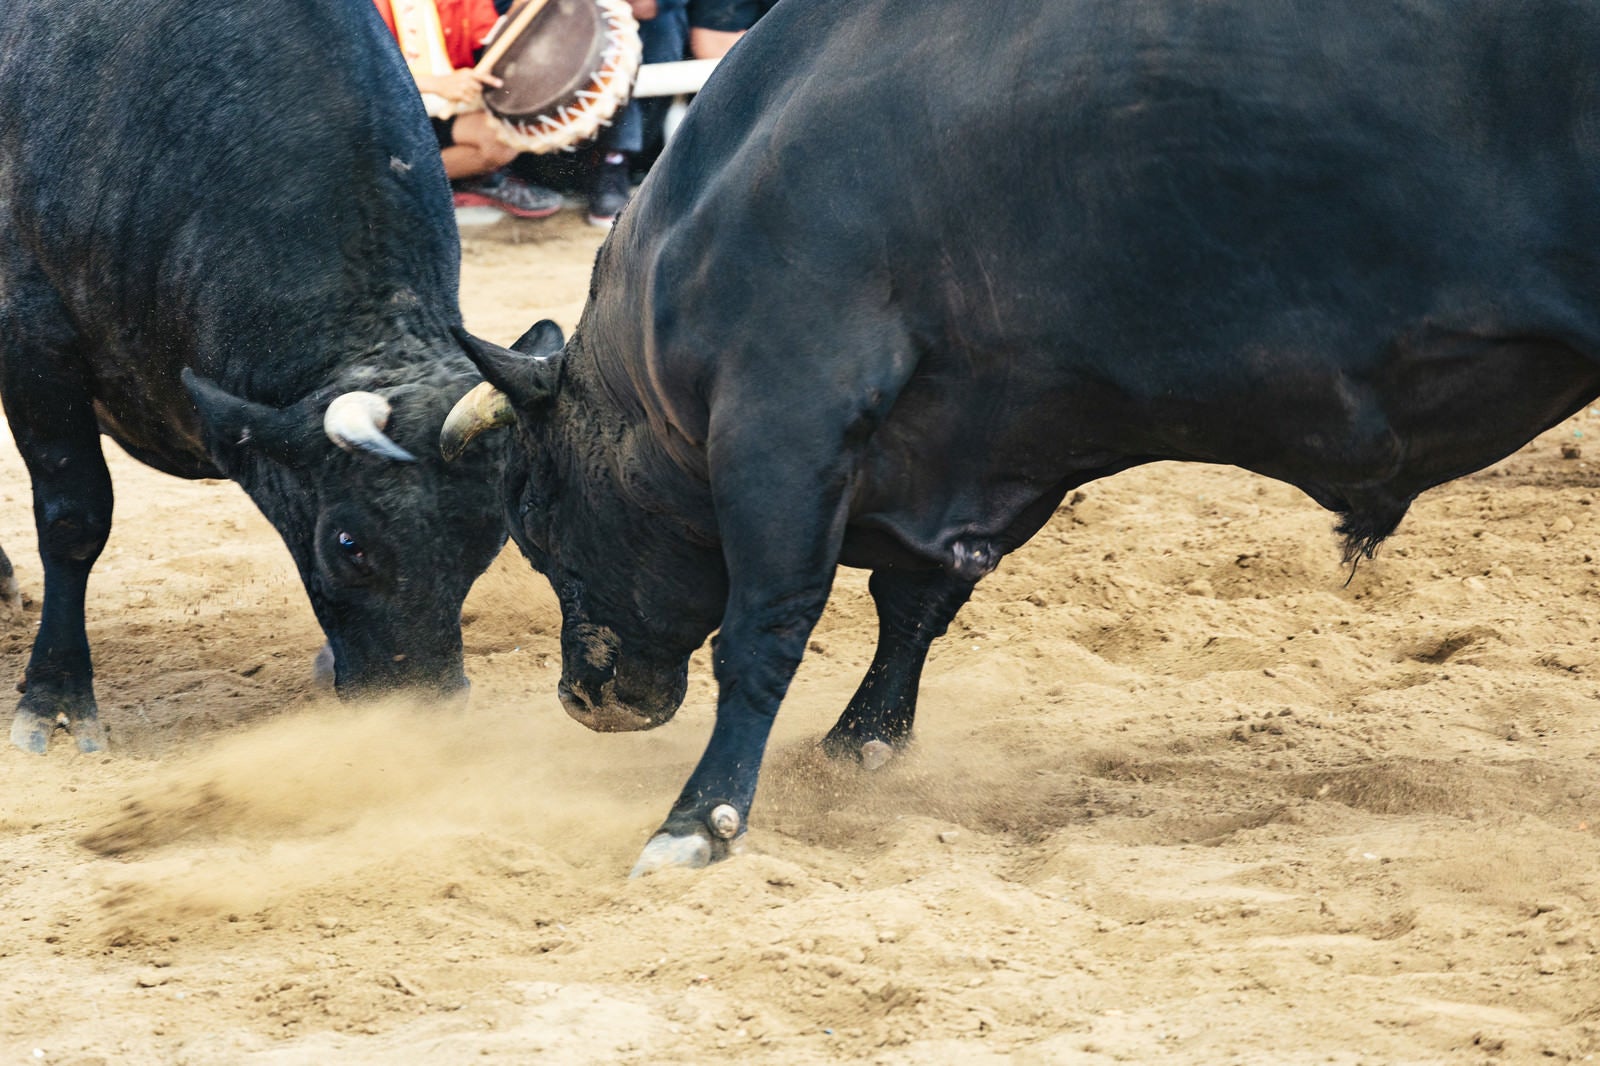 「徳之島なくさみ館で開催される闘牛の様子」の写真